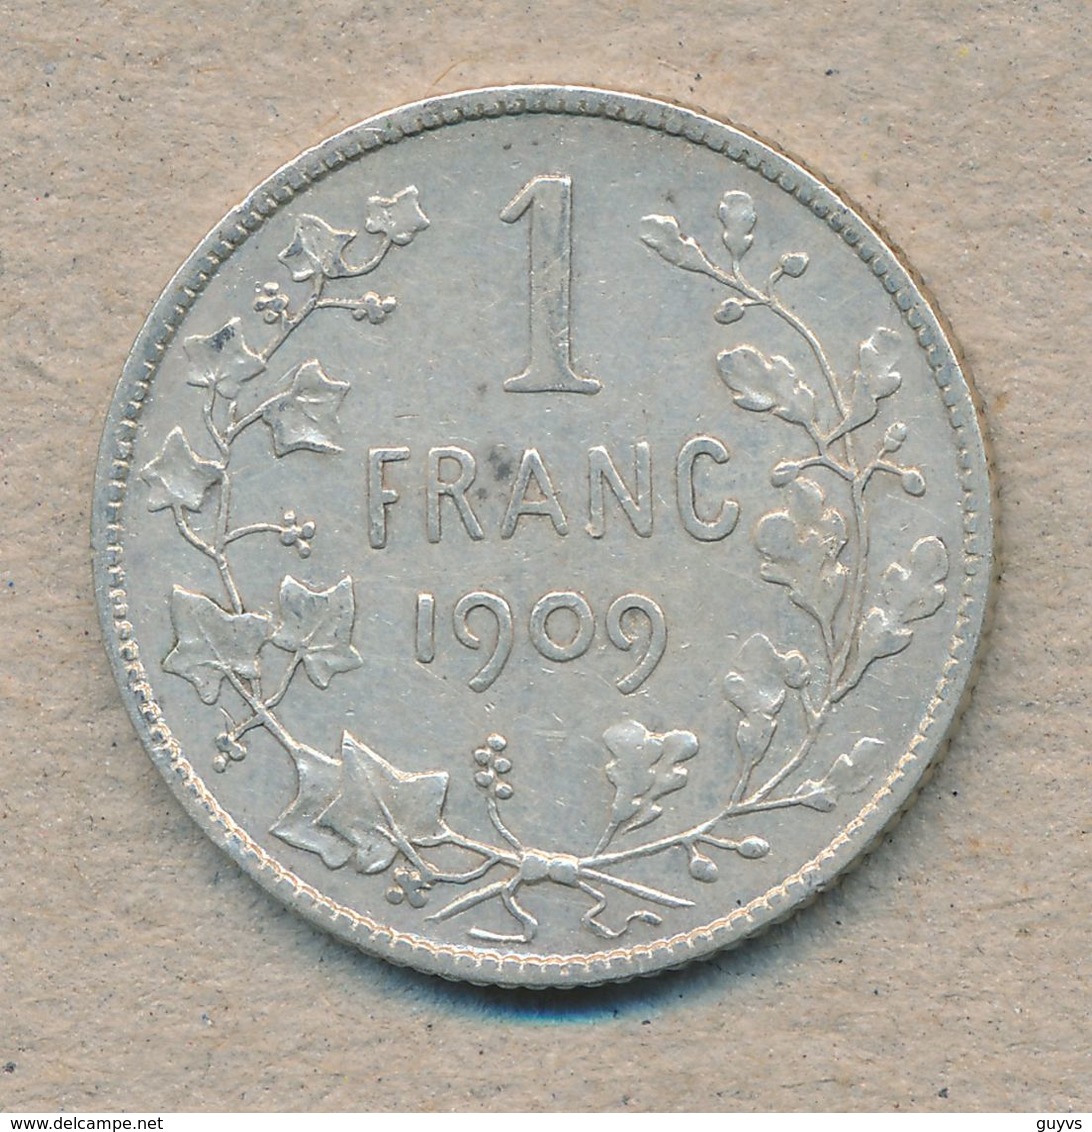 België/Belgique 1 Fr Leopold II 1909 Fr Morin 200a (137842) - 1 Franc